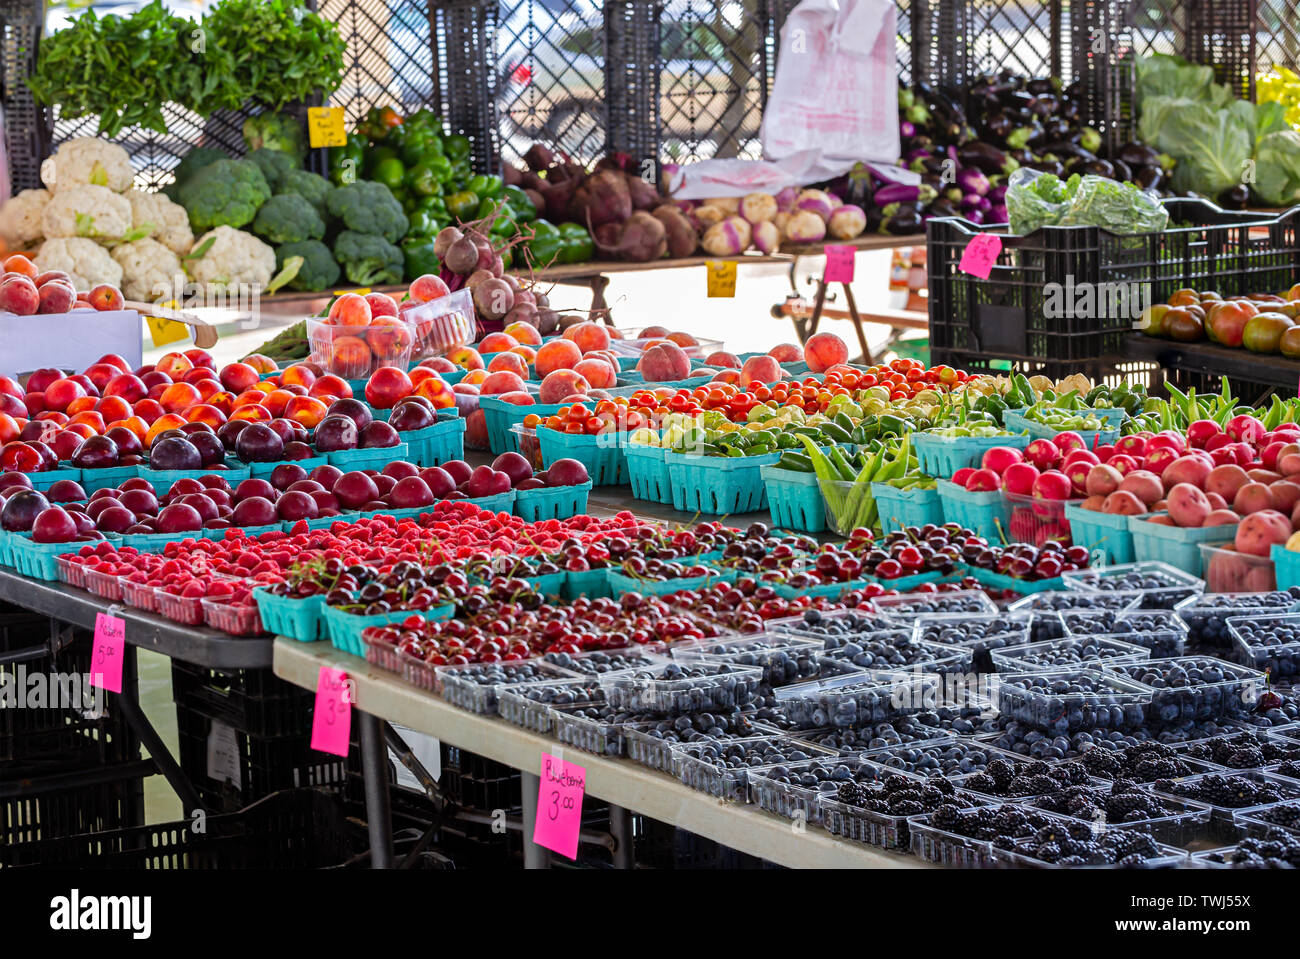 Eine schöne Darstellung von Obst und Gemüse in einem lokalen Markt im Freien Stockfoto